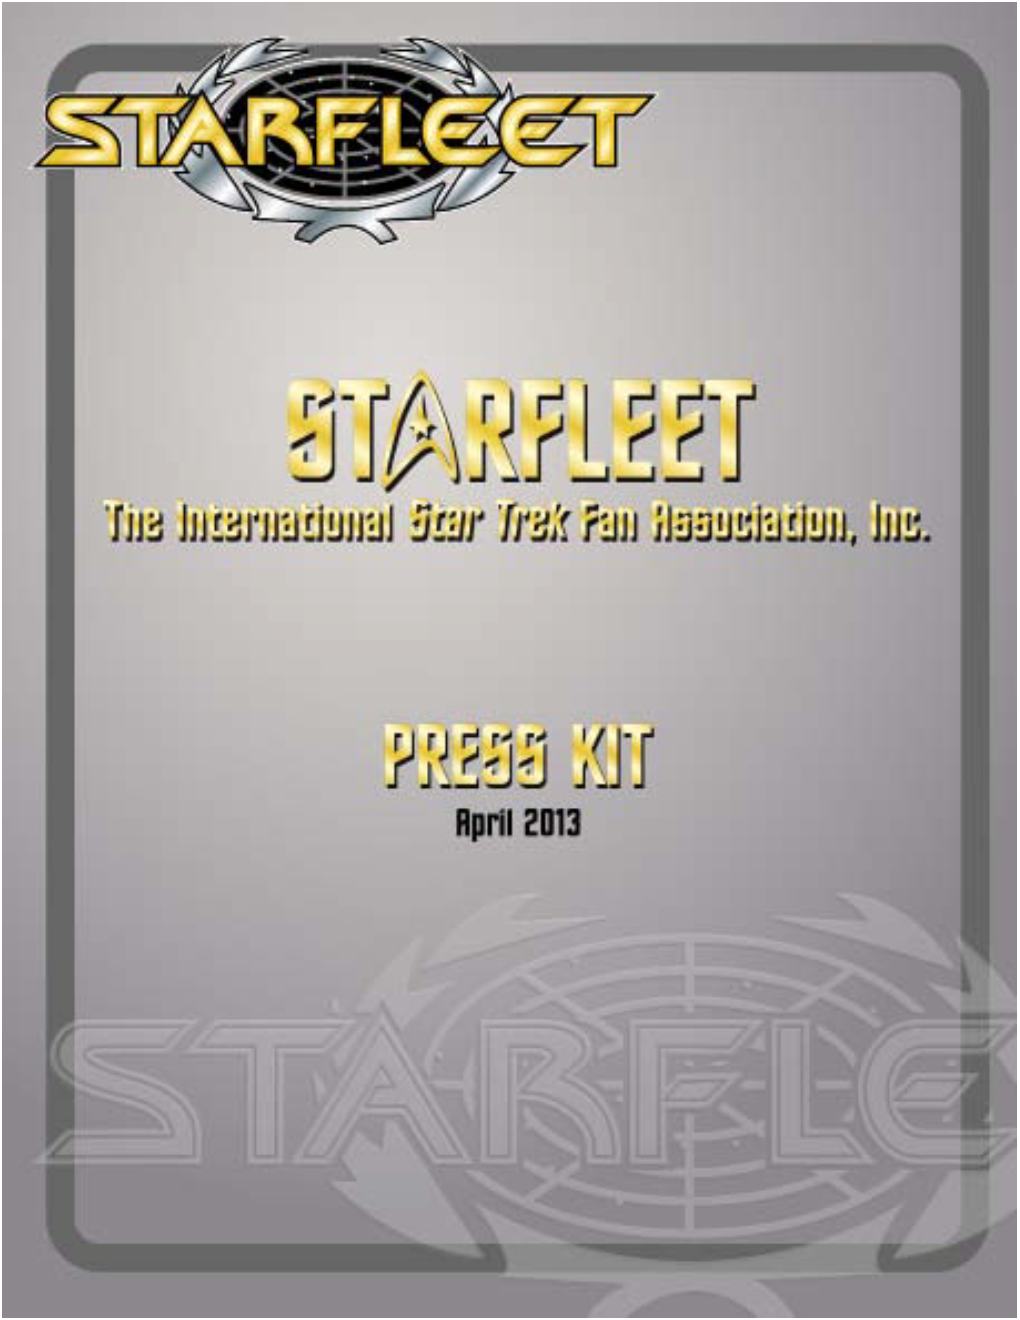 Starfleetpresskit April 2013.Pdf